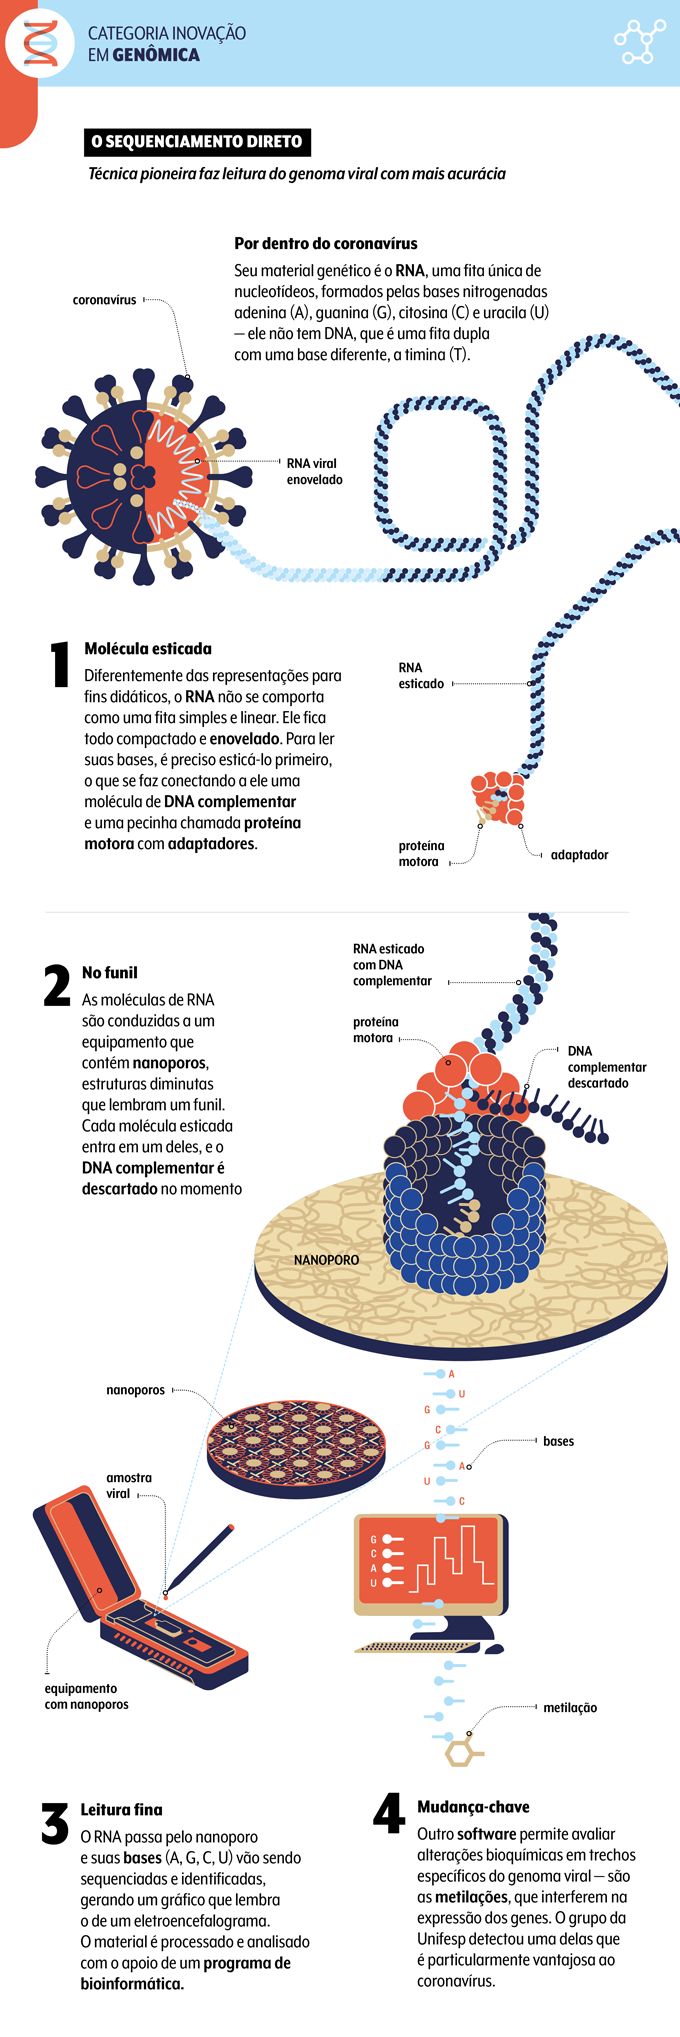 infográfico sobre técnica do trabalho da UNIFESP com o RNA do coronavírus